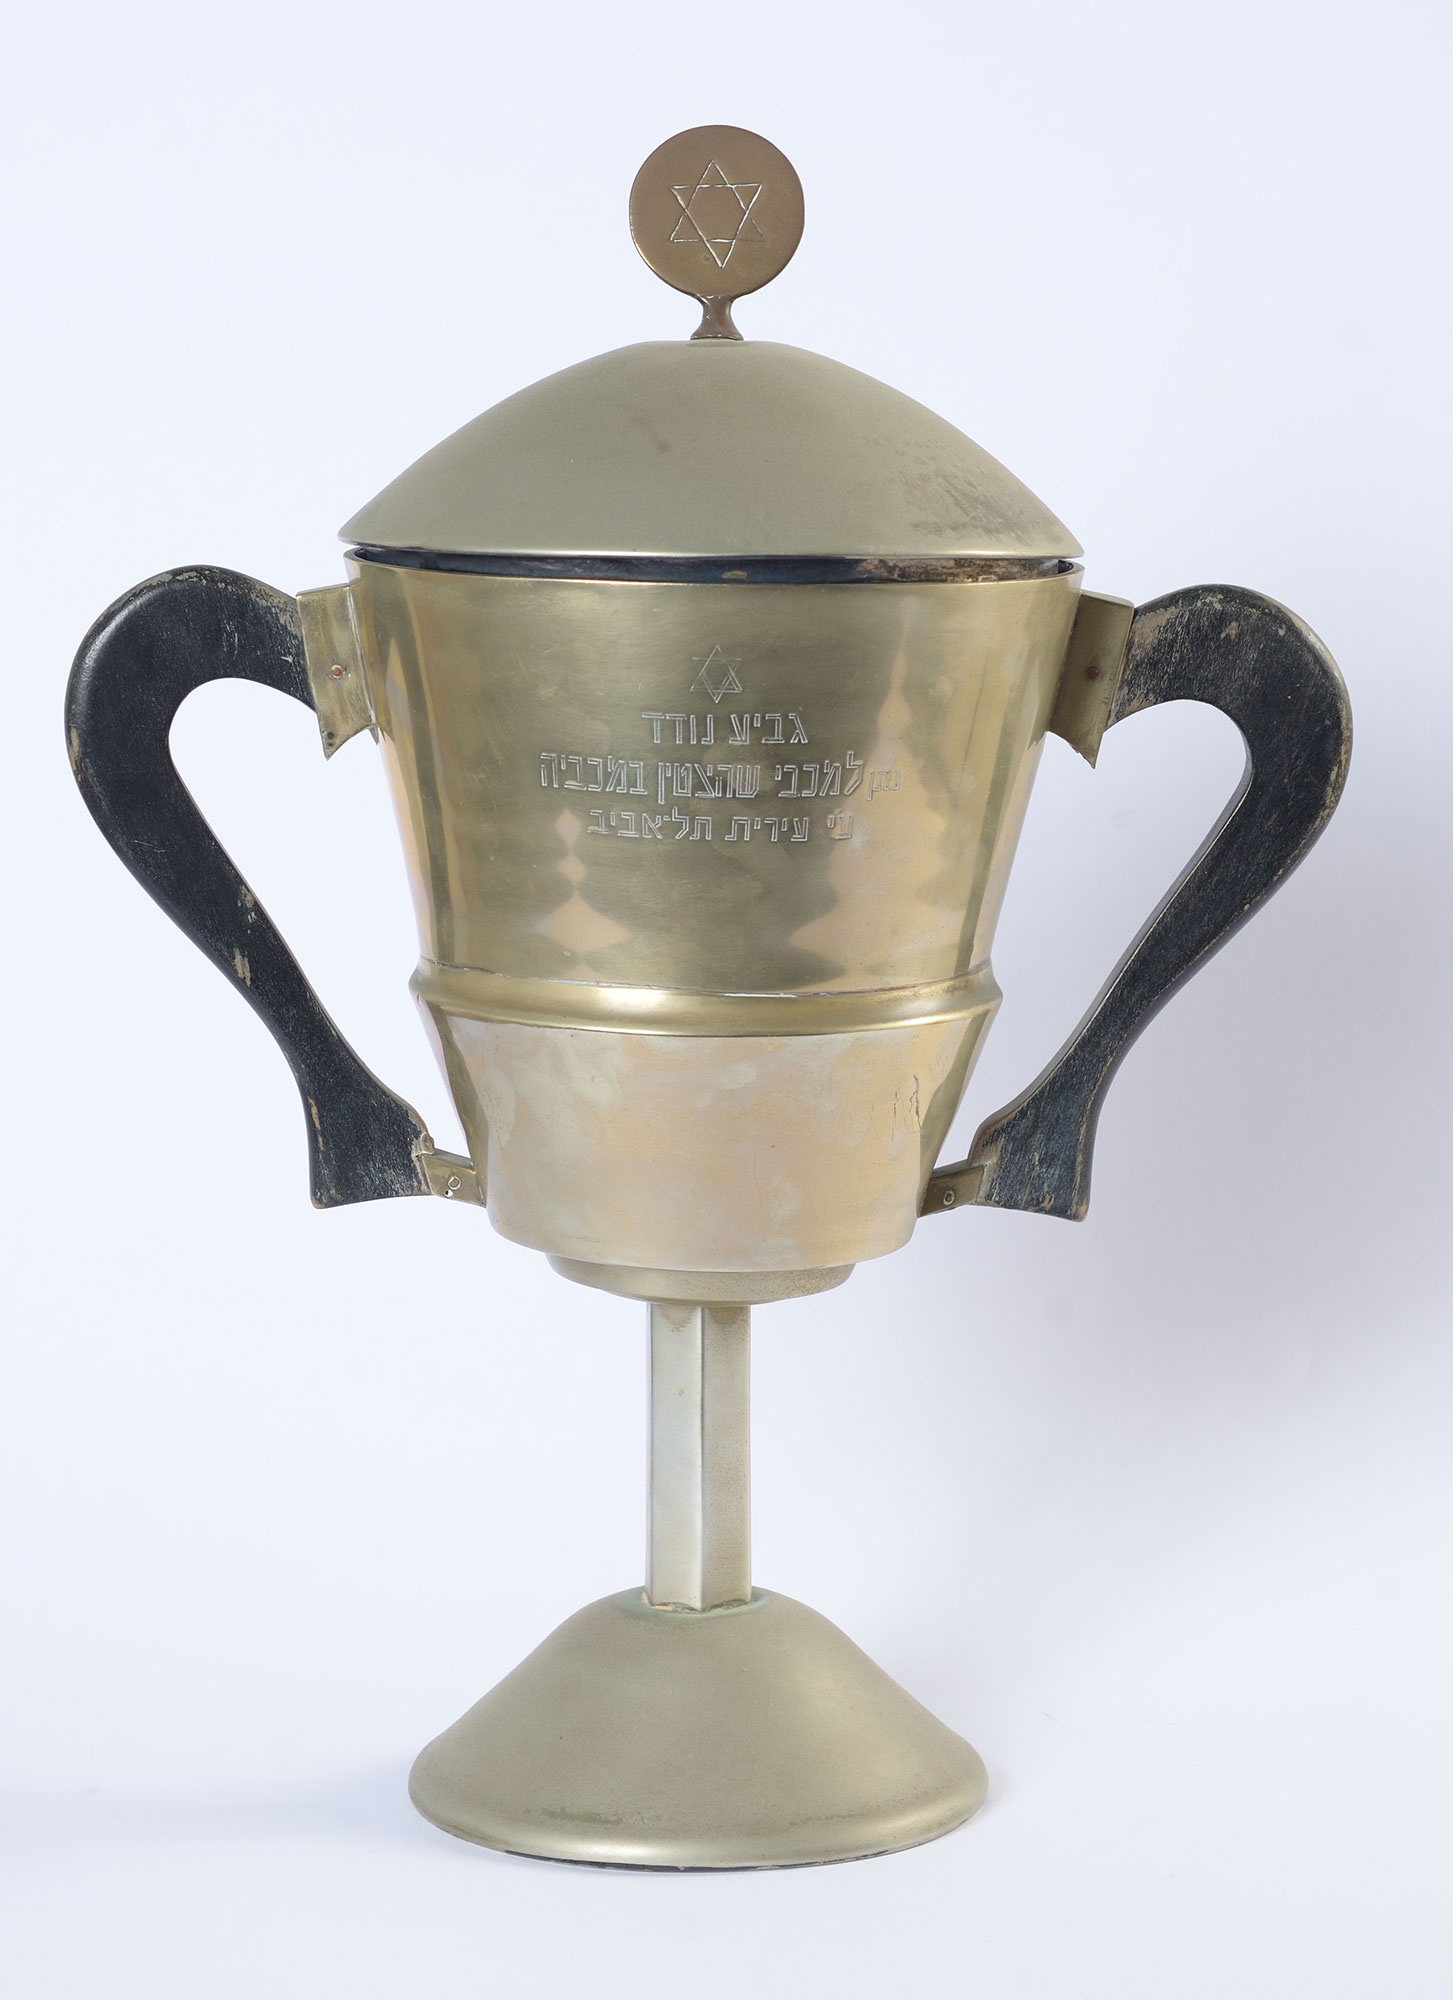 Pokal für herausragende Leistungen bei der Makkabiade, der der Sportlerin Maryla Freiwald bei der Makkabiade 1935 überreicht wurde